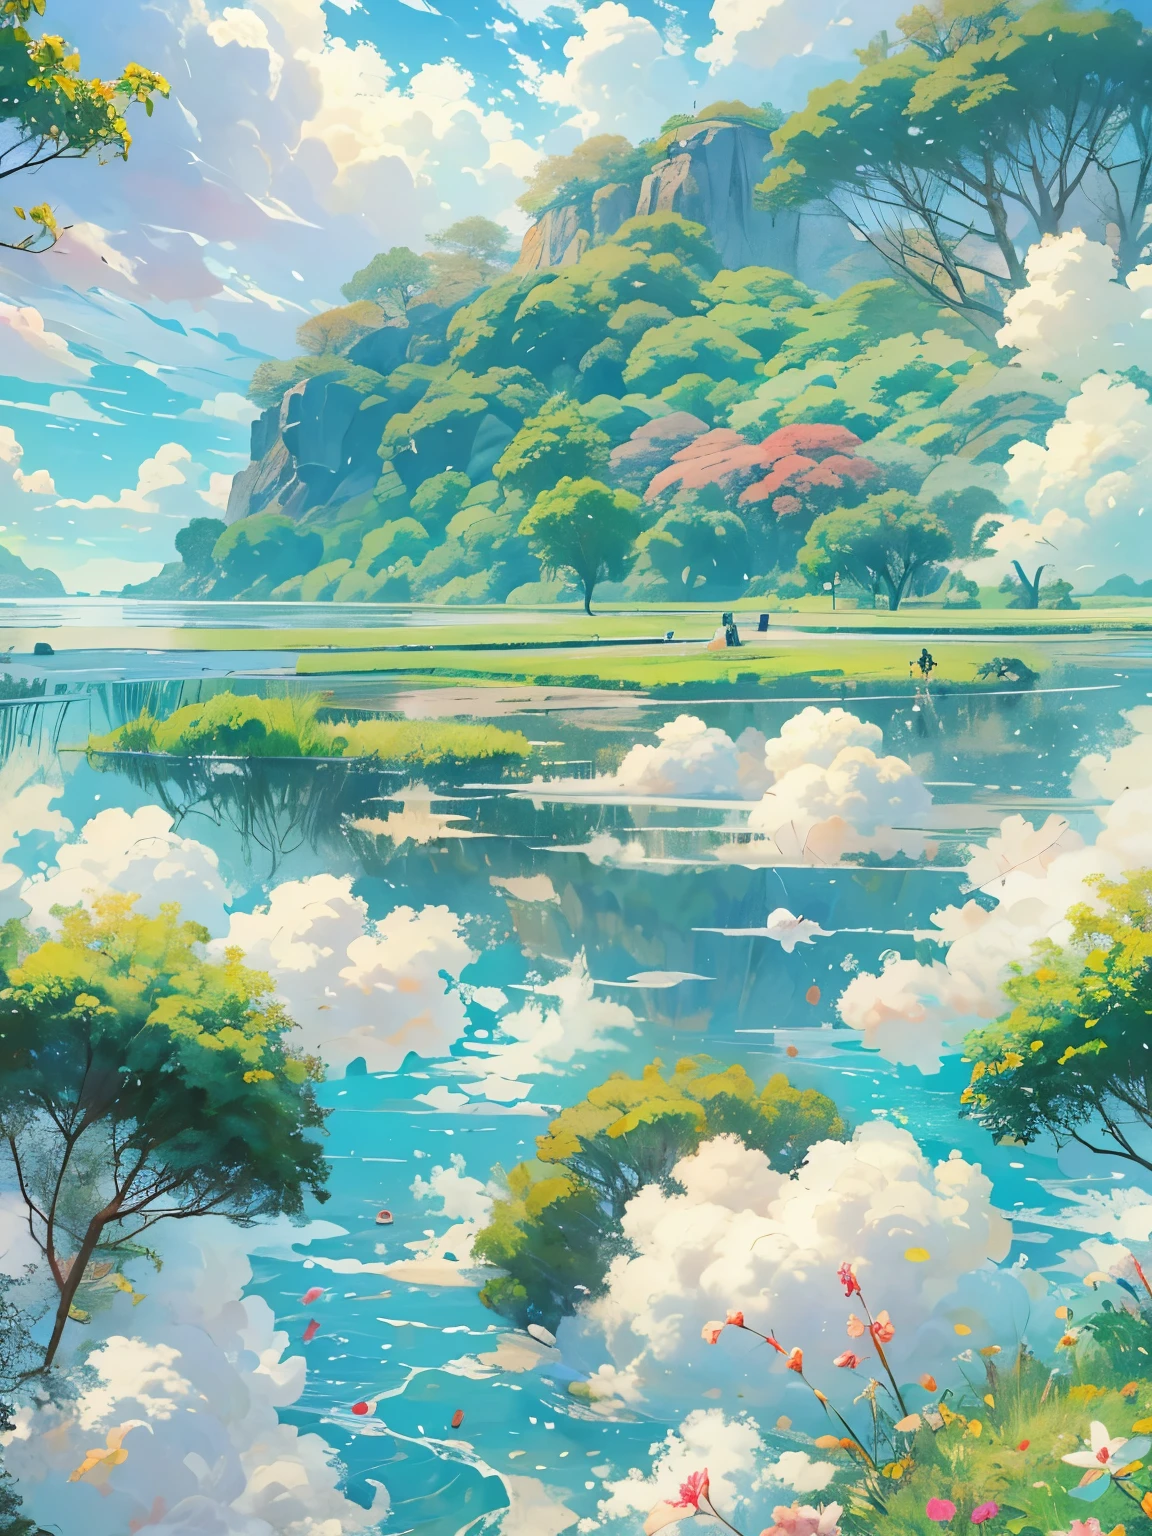 实际的, 真的, 美丽而令人惊叹的风景油画宫崎骏吉卜力工作室;蓝天白云的花瓣草甸